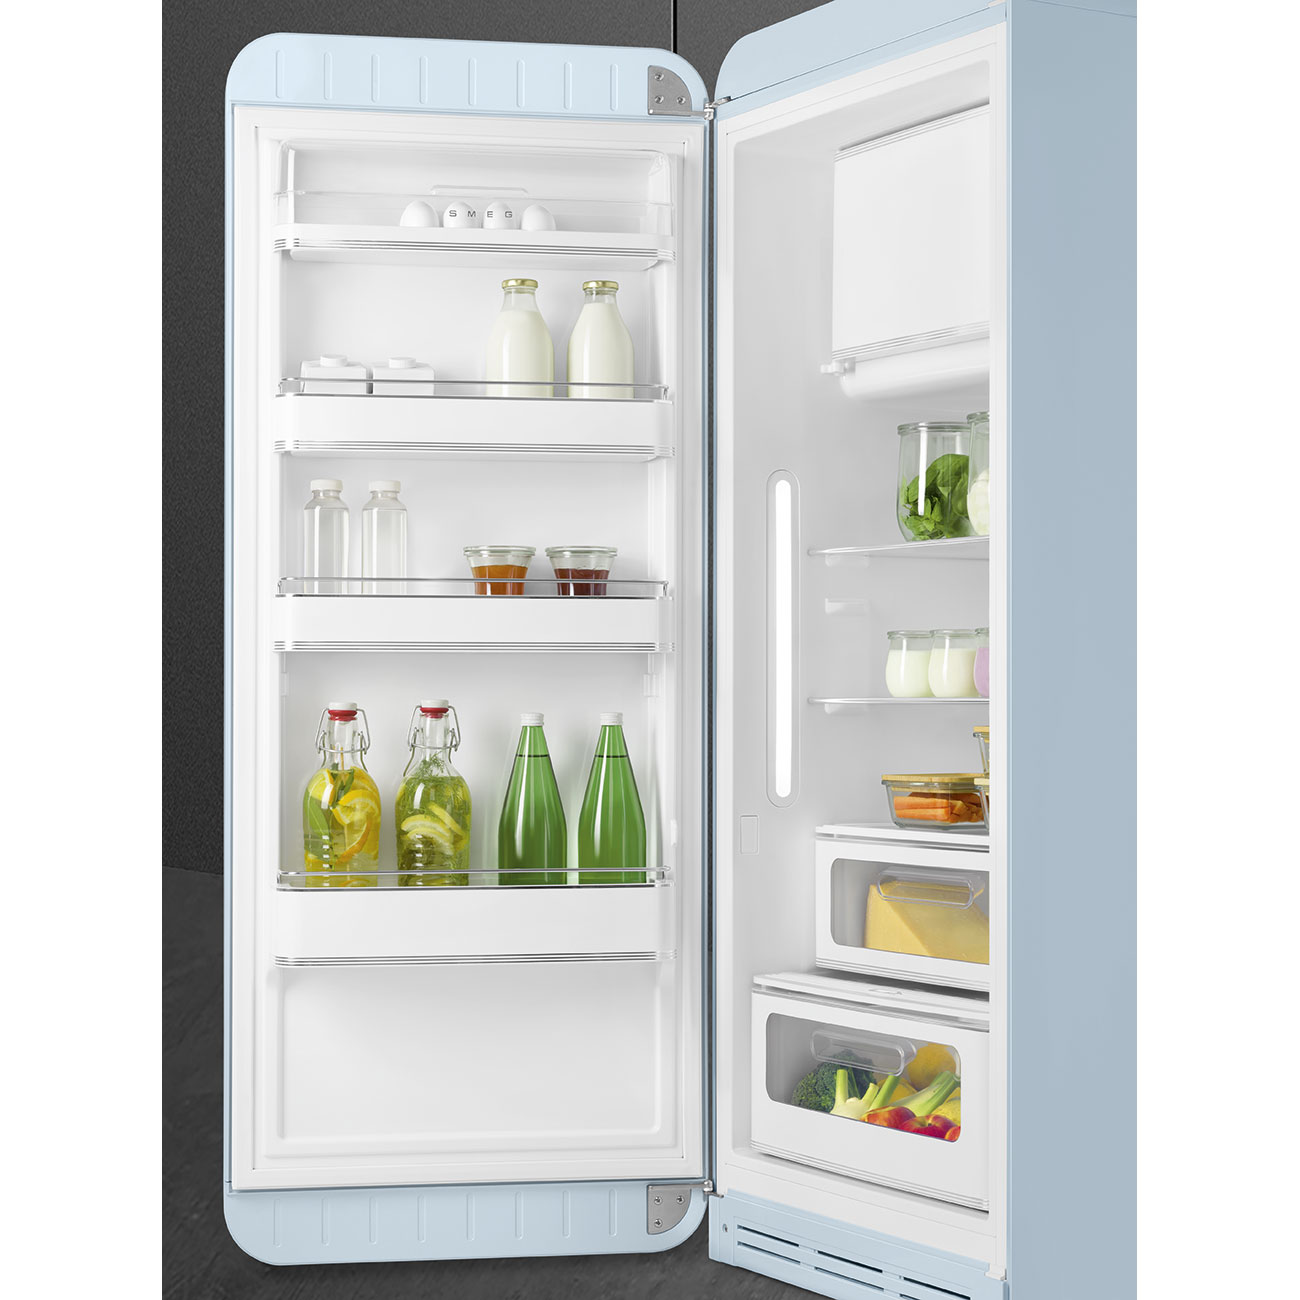 Pastel blue refrigerator - Smeg_9